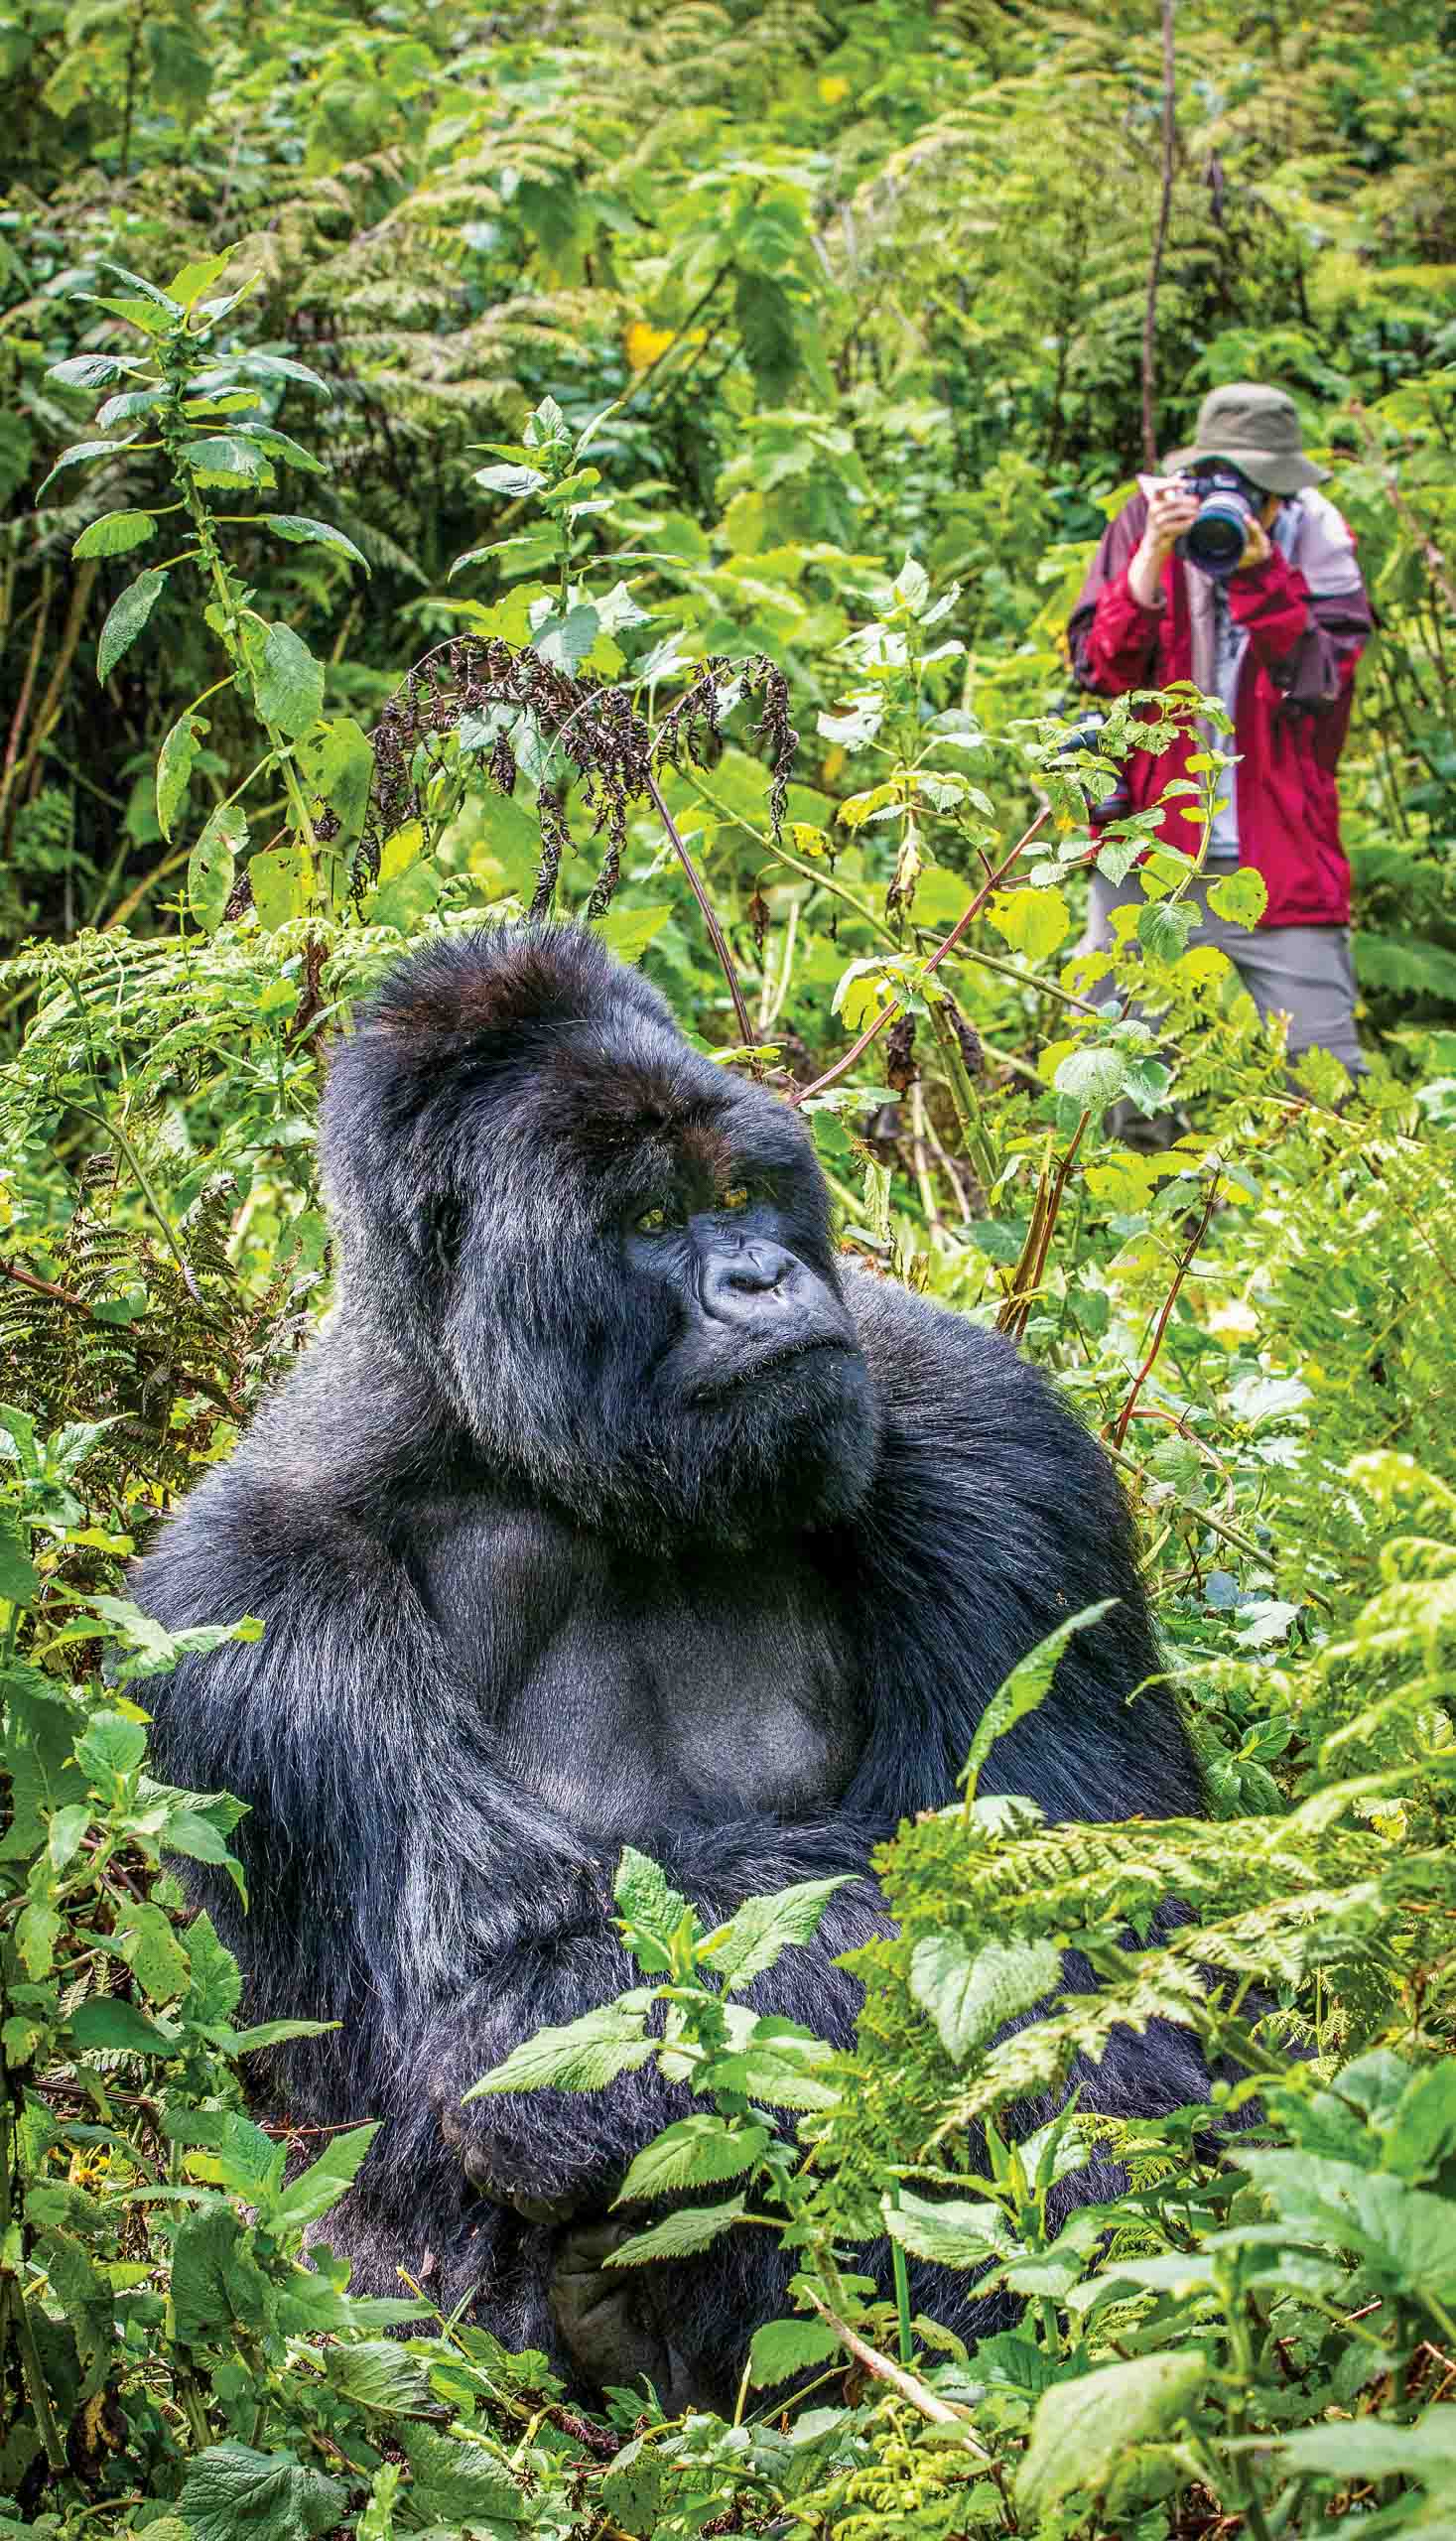 A gorilla in the wild in Uganda.